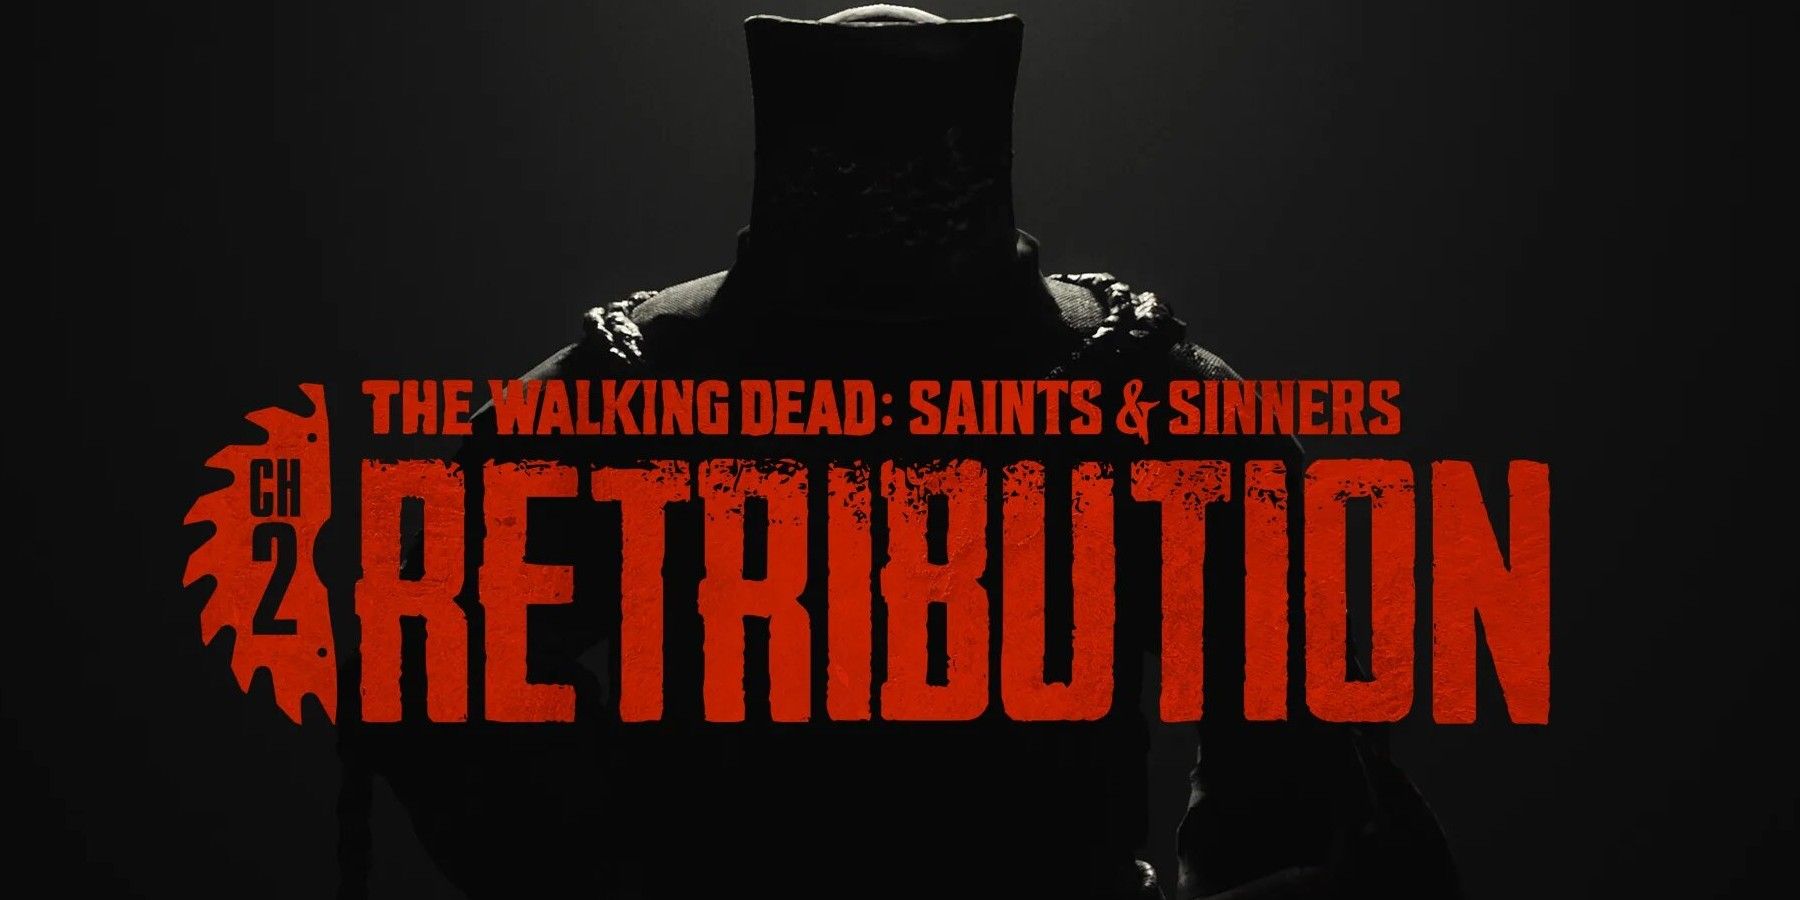 walking dead retribution release date reveal